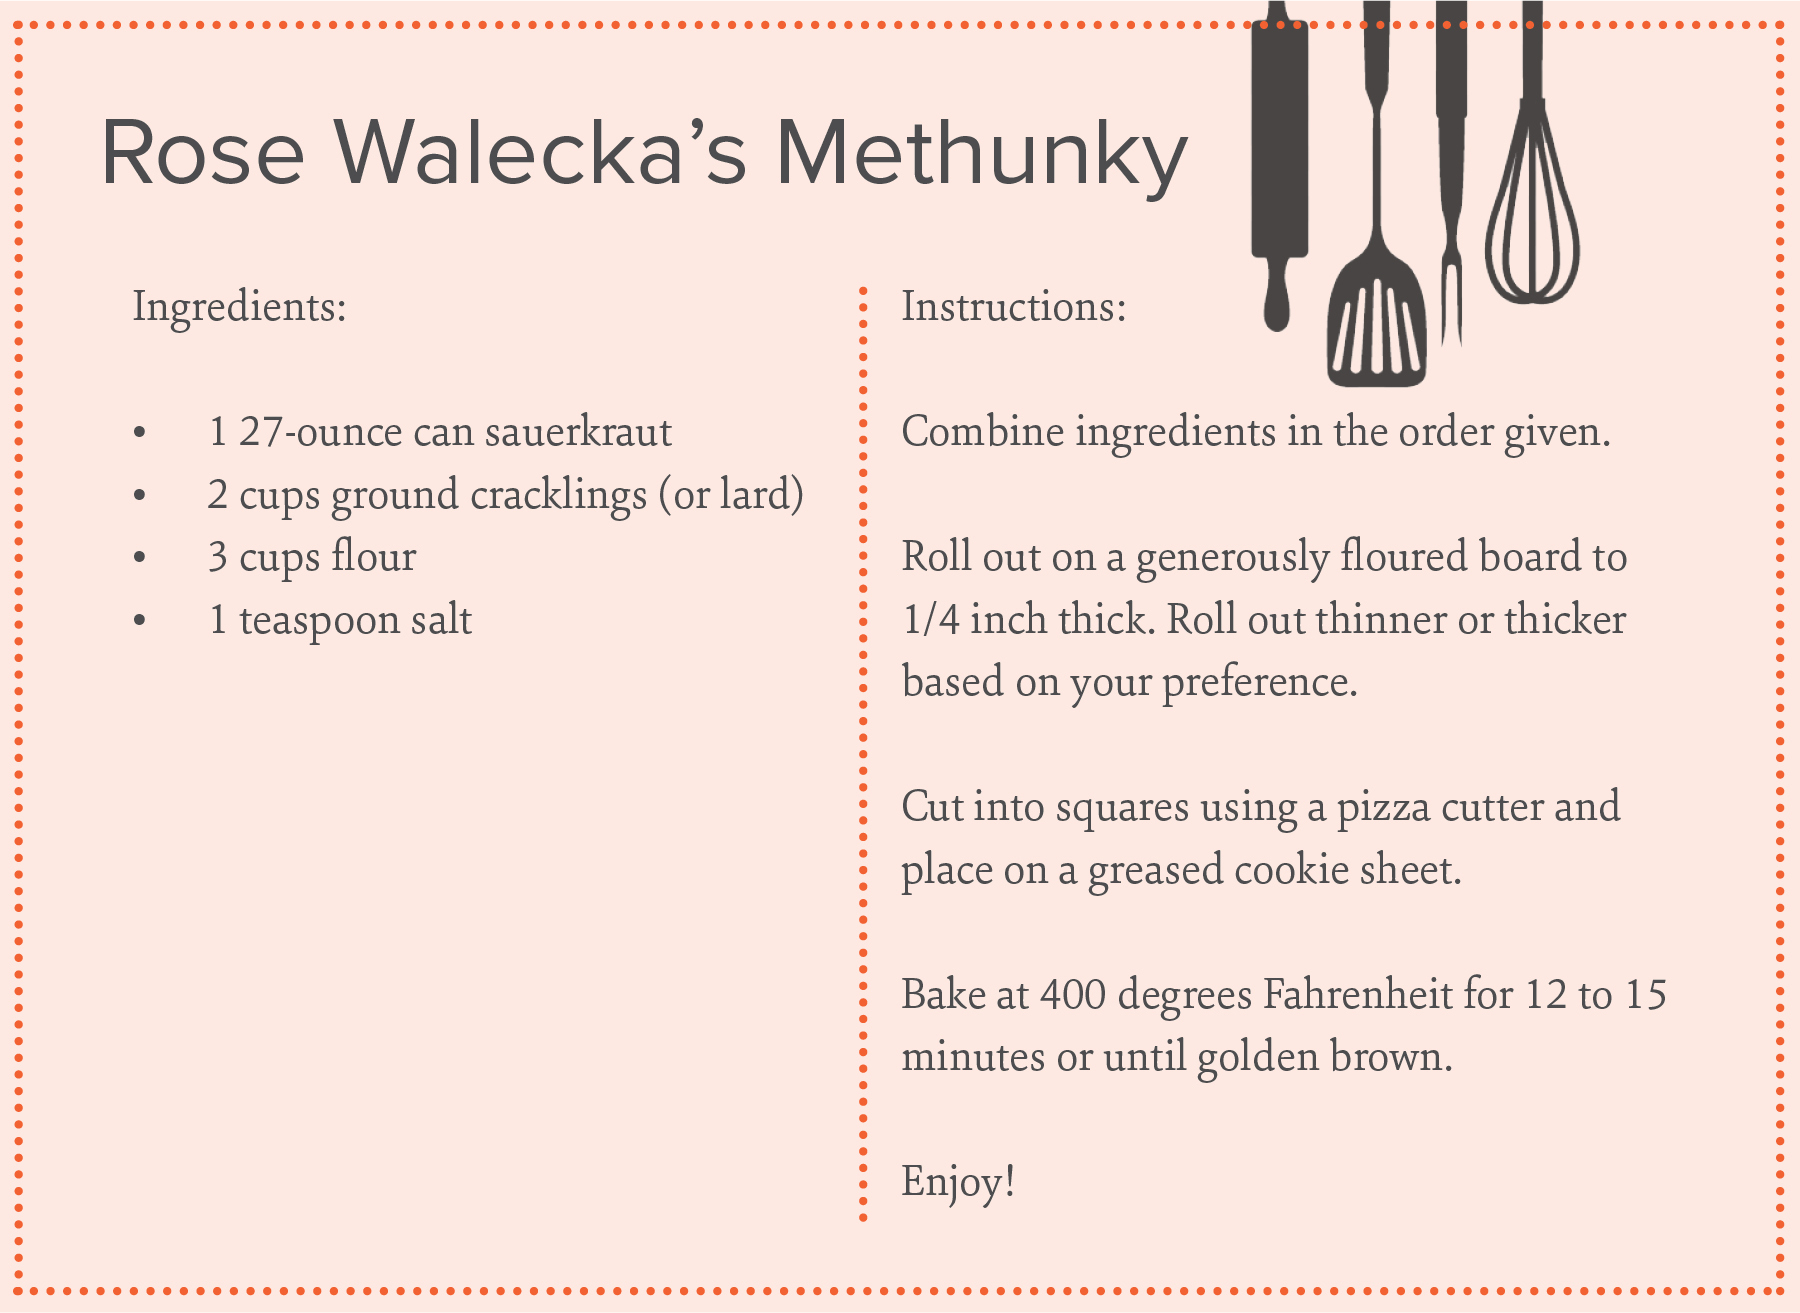 methunky recipe card